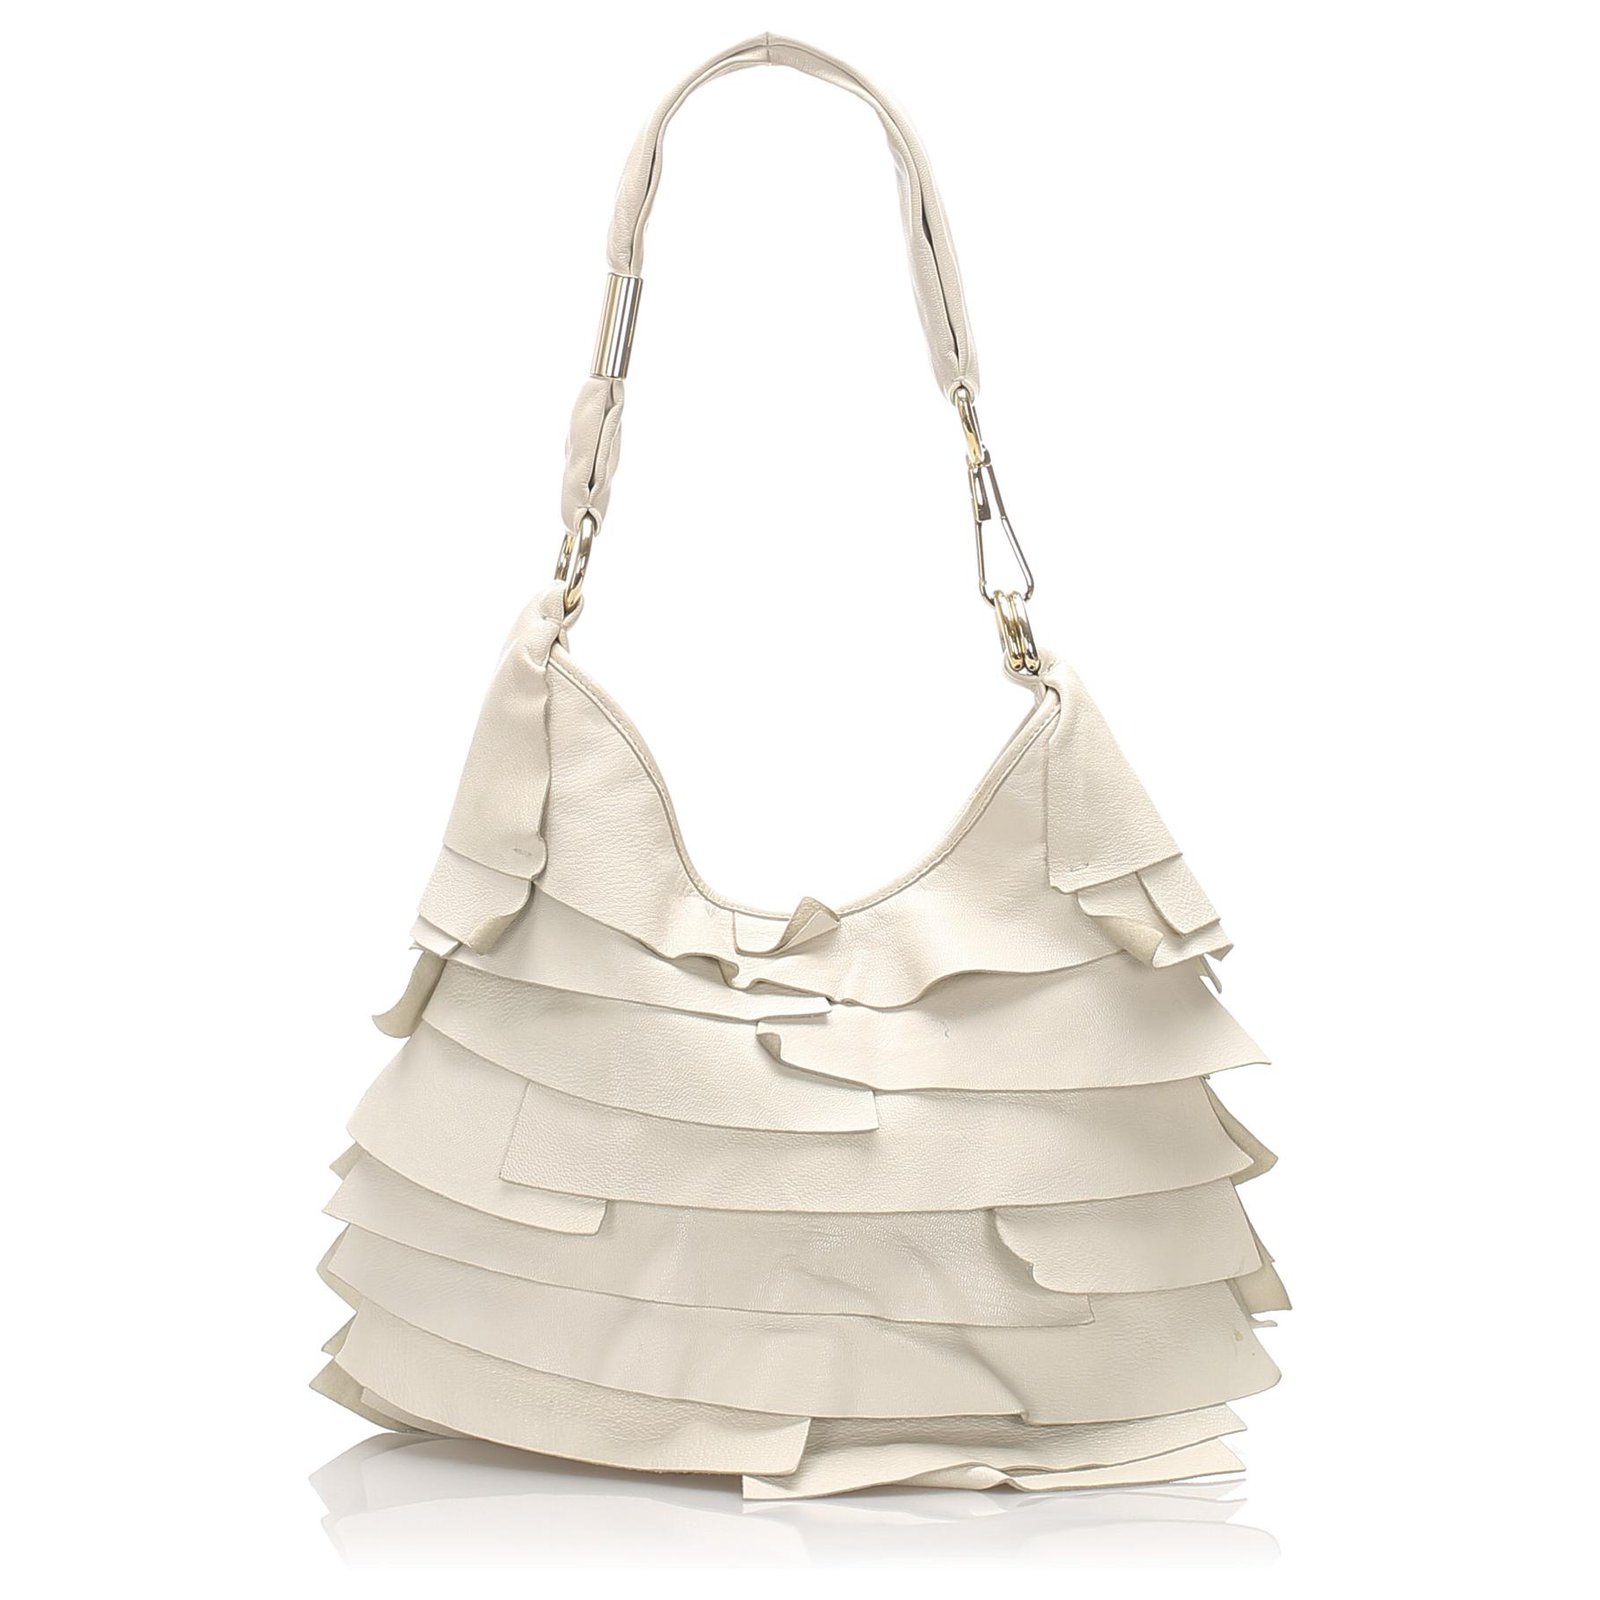 Yves Saint Laurent YSL White Leather Saint Tropez Shoulder Bag